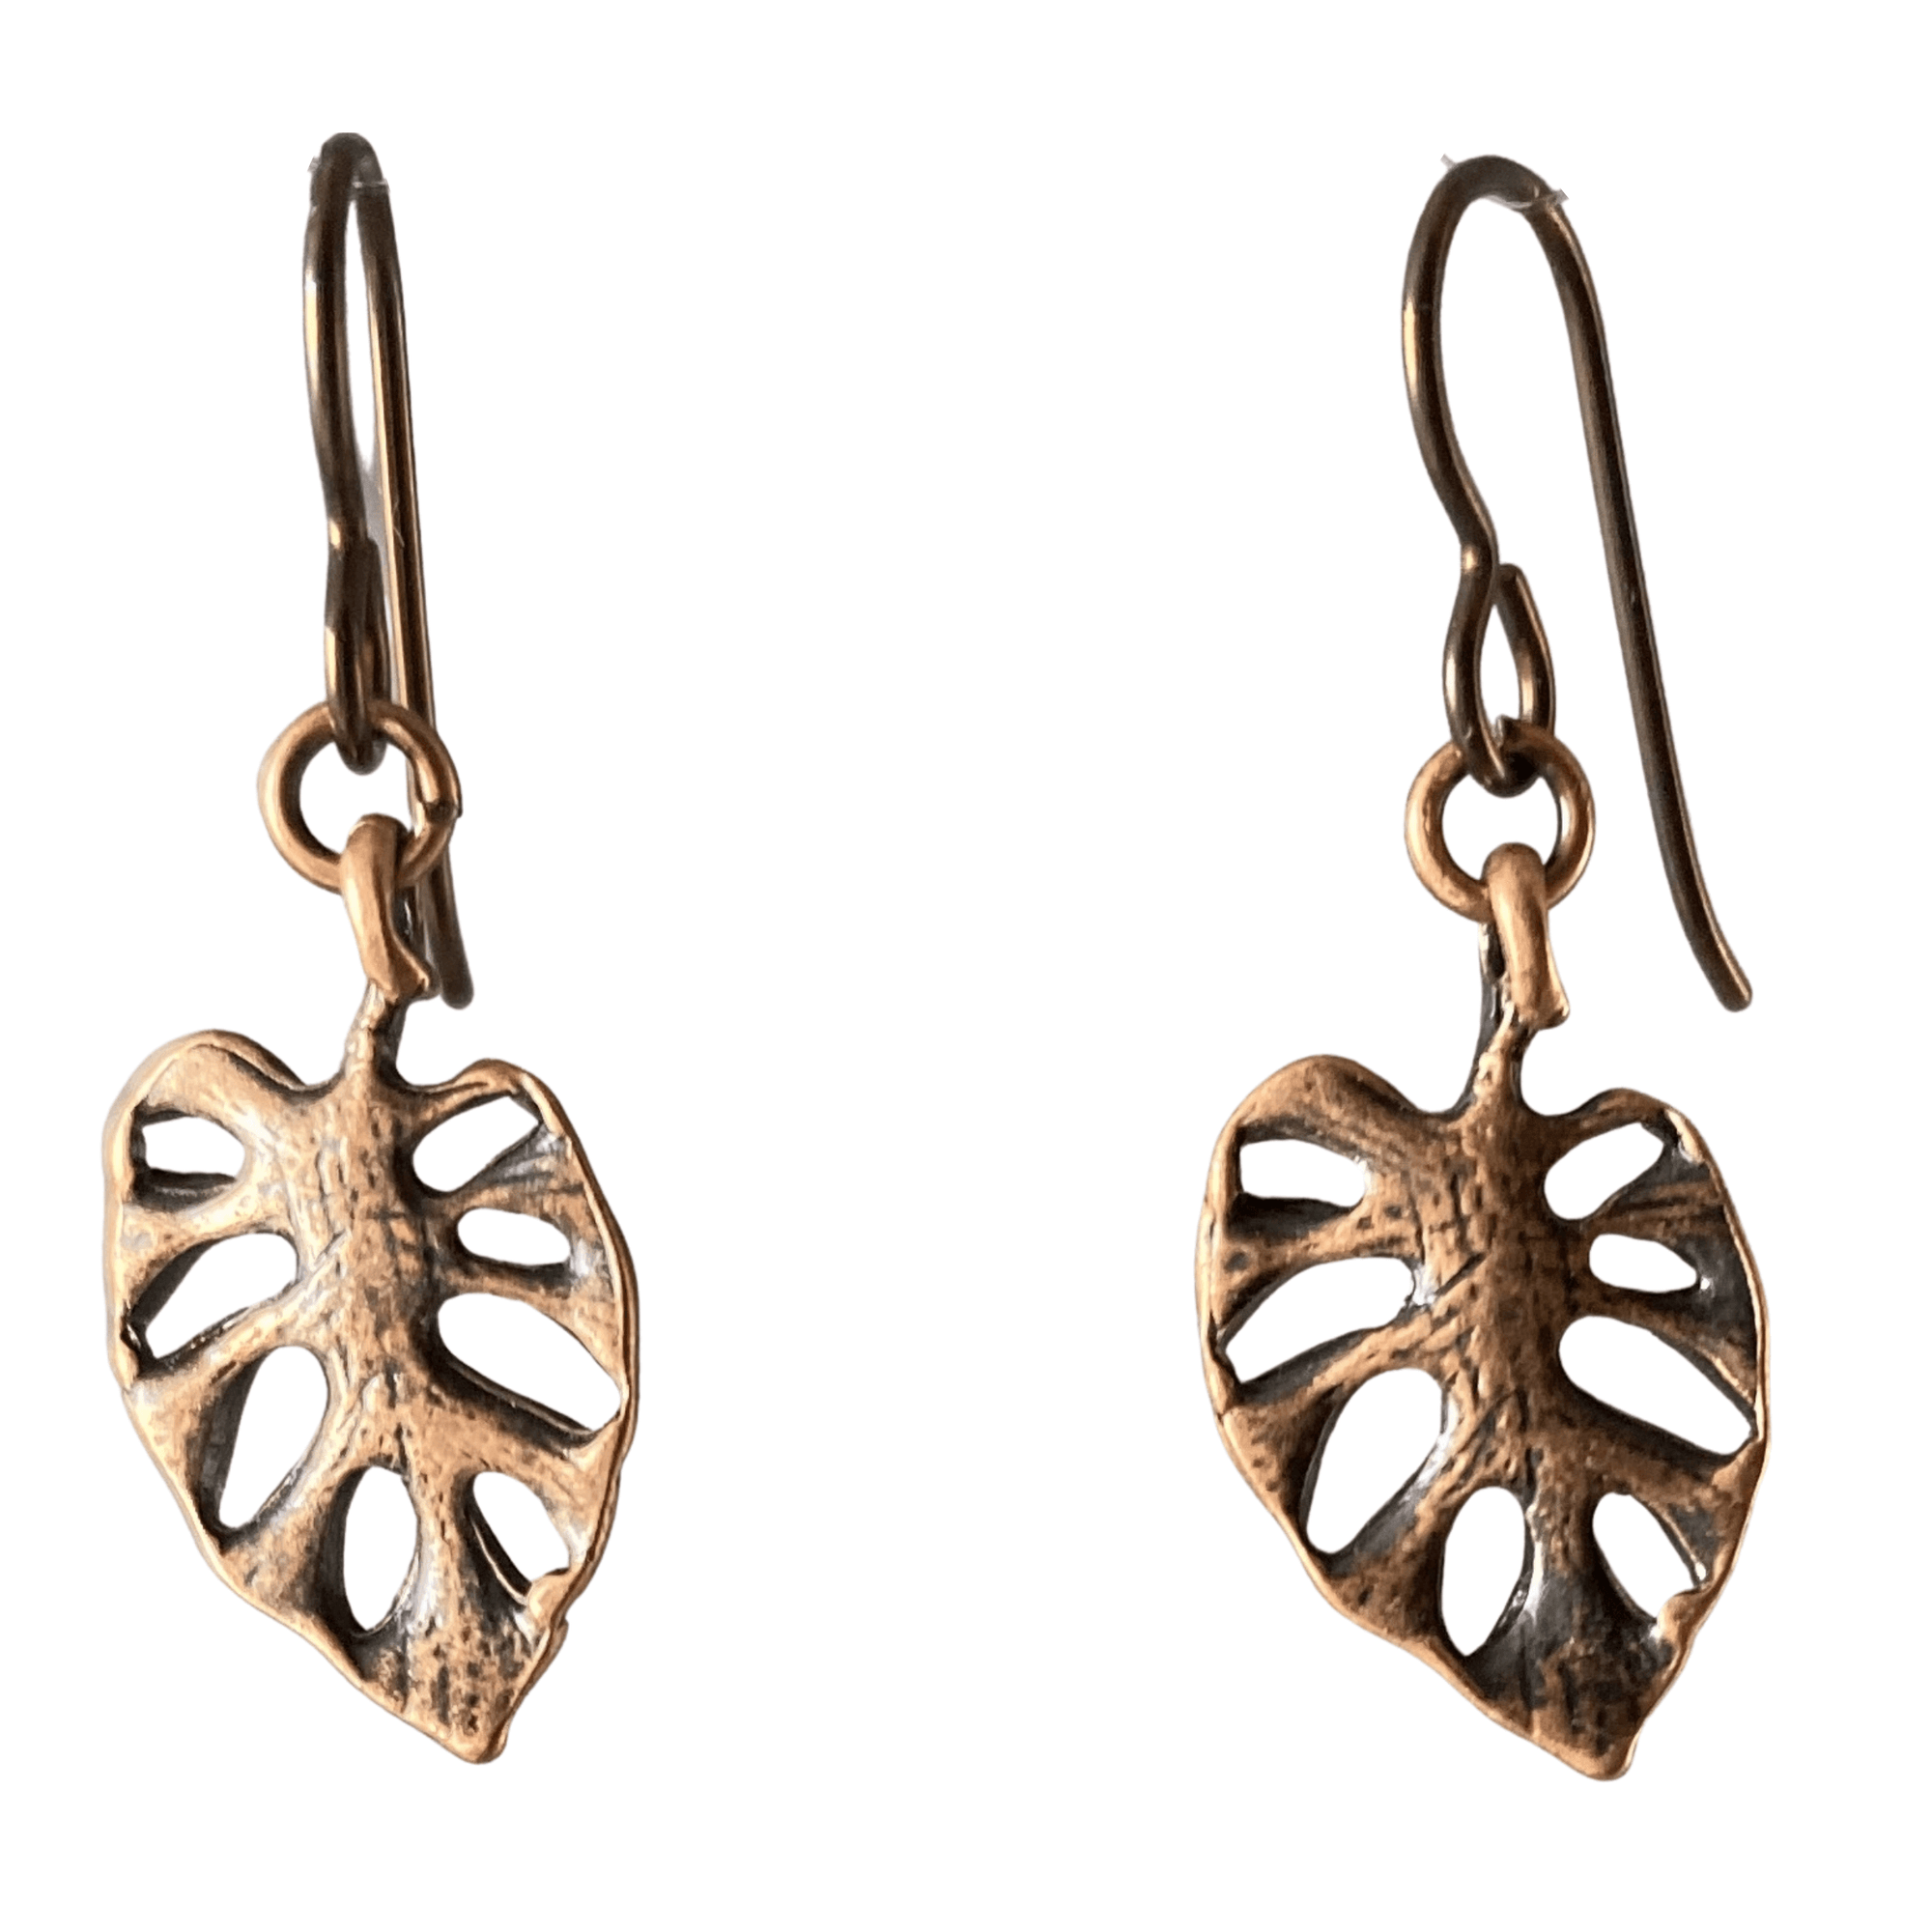 Copper Cutout Leaf Earrings for Sensitive Ears-Earrings- Creative Jewelry by Marcia